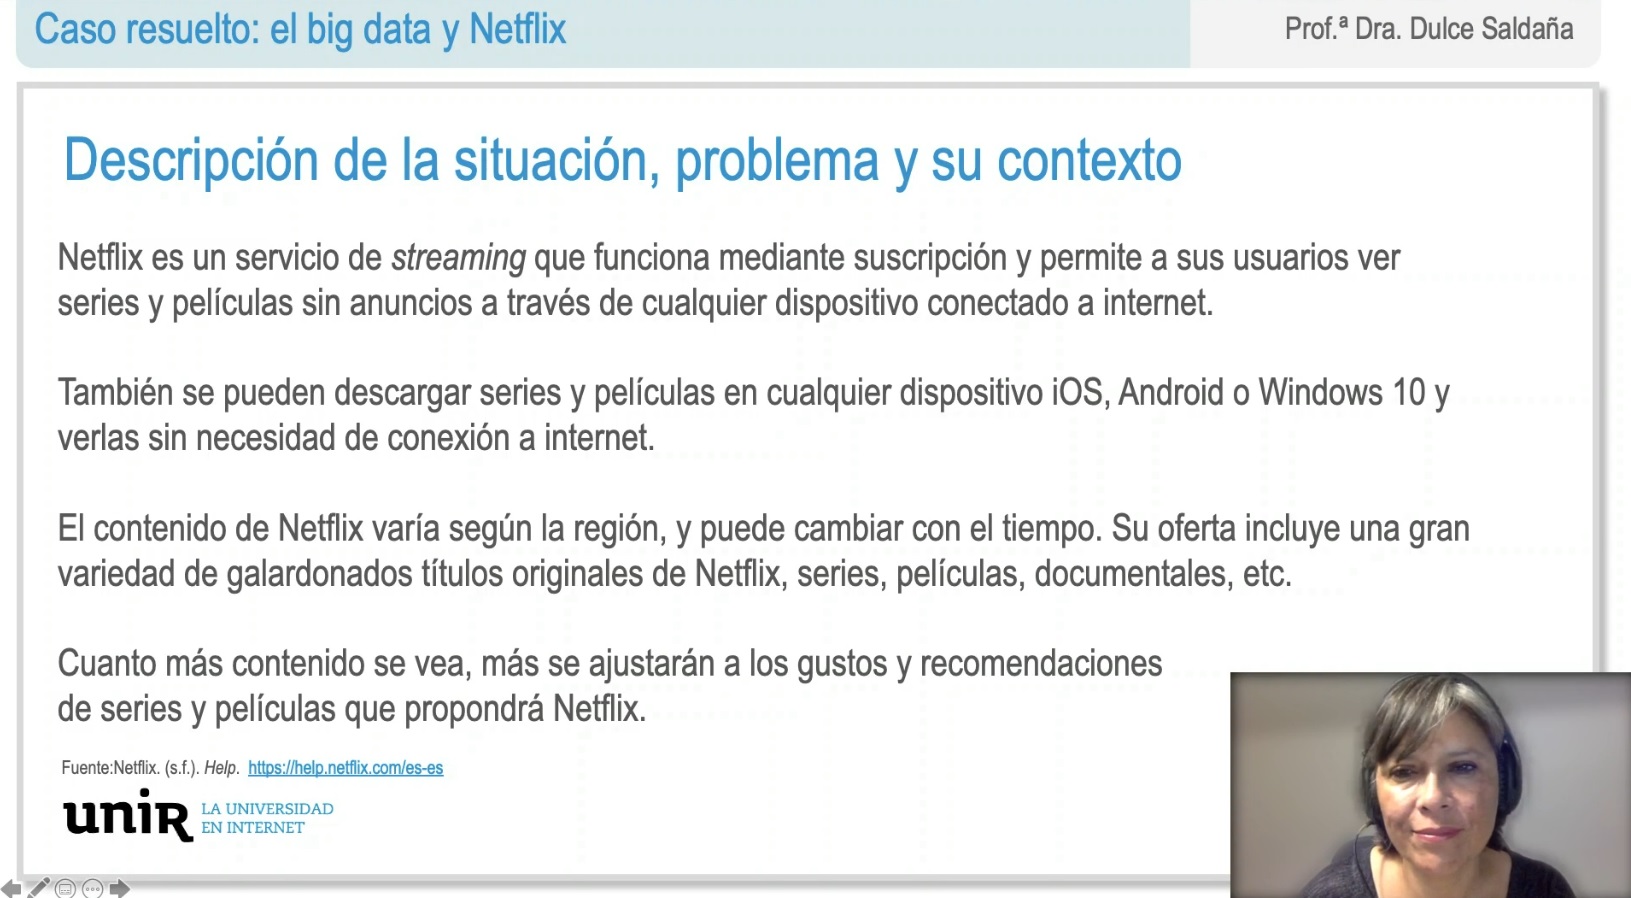 Bloque-2-Caso-El-big-data-y-Netflix